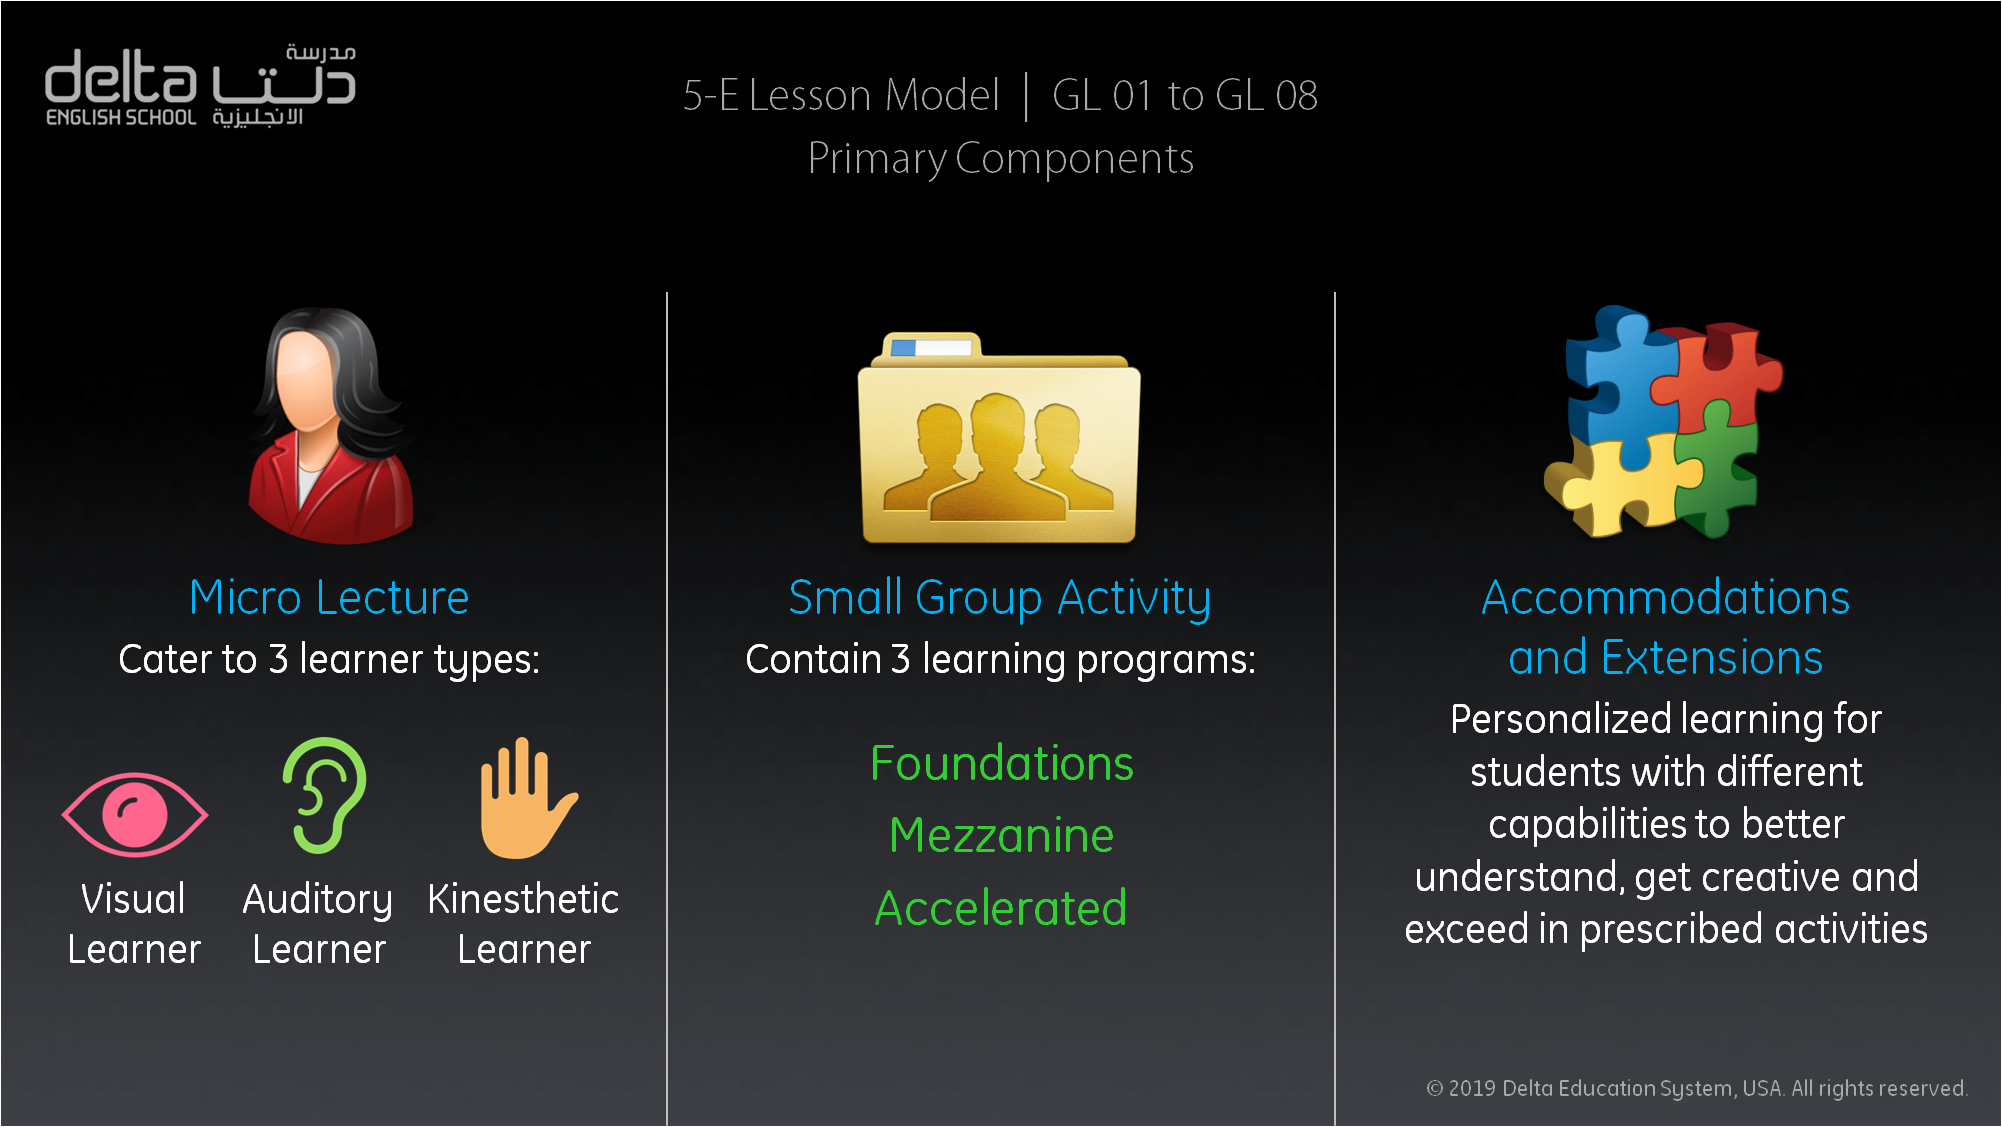 5-E Lesson Model Primary Components